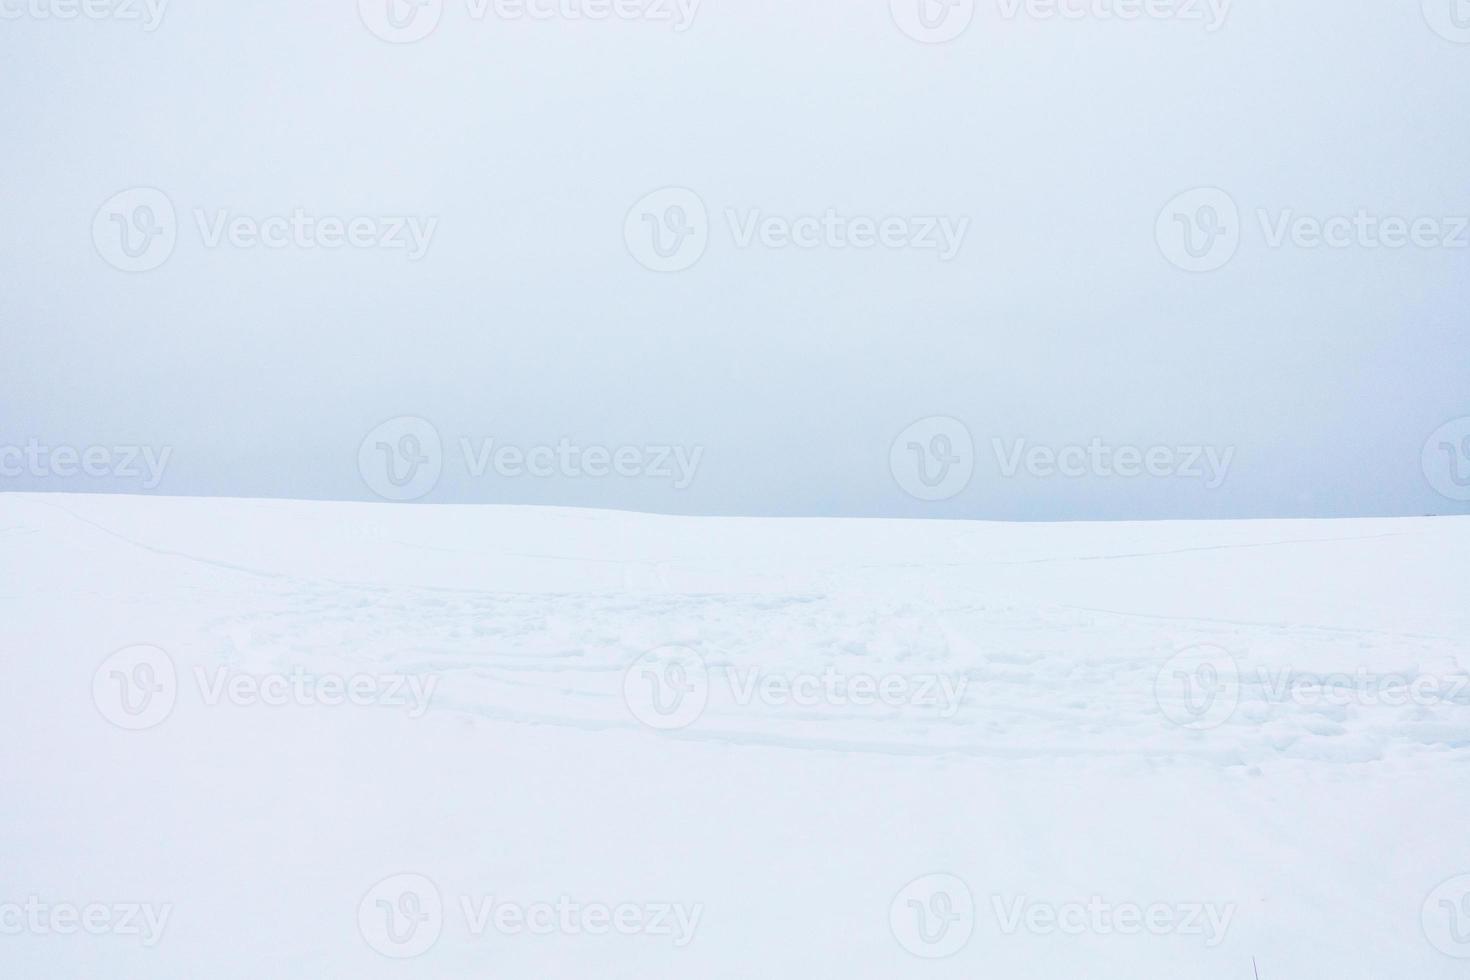 suave paisaje minimalista de campo de nieve con pistas de motos de nieve. foto